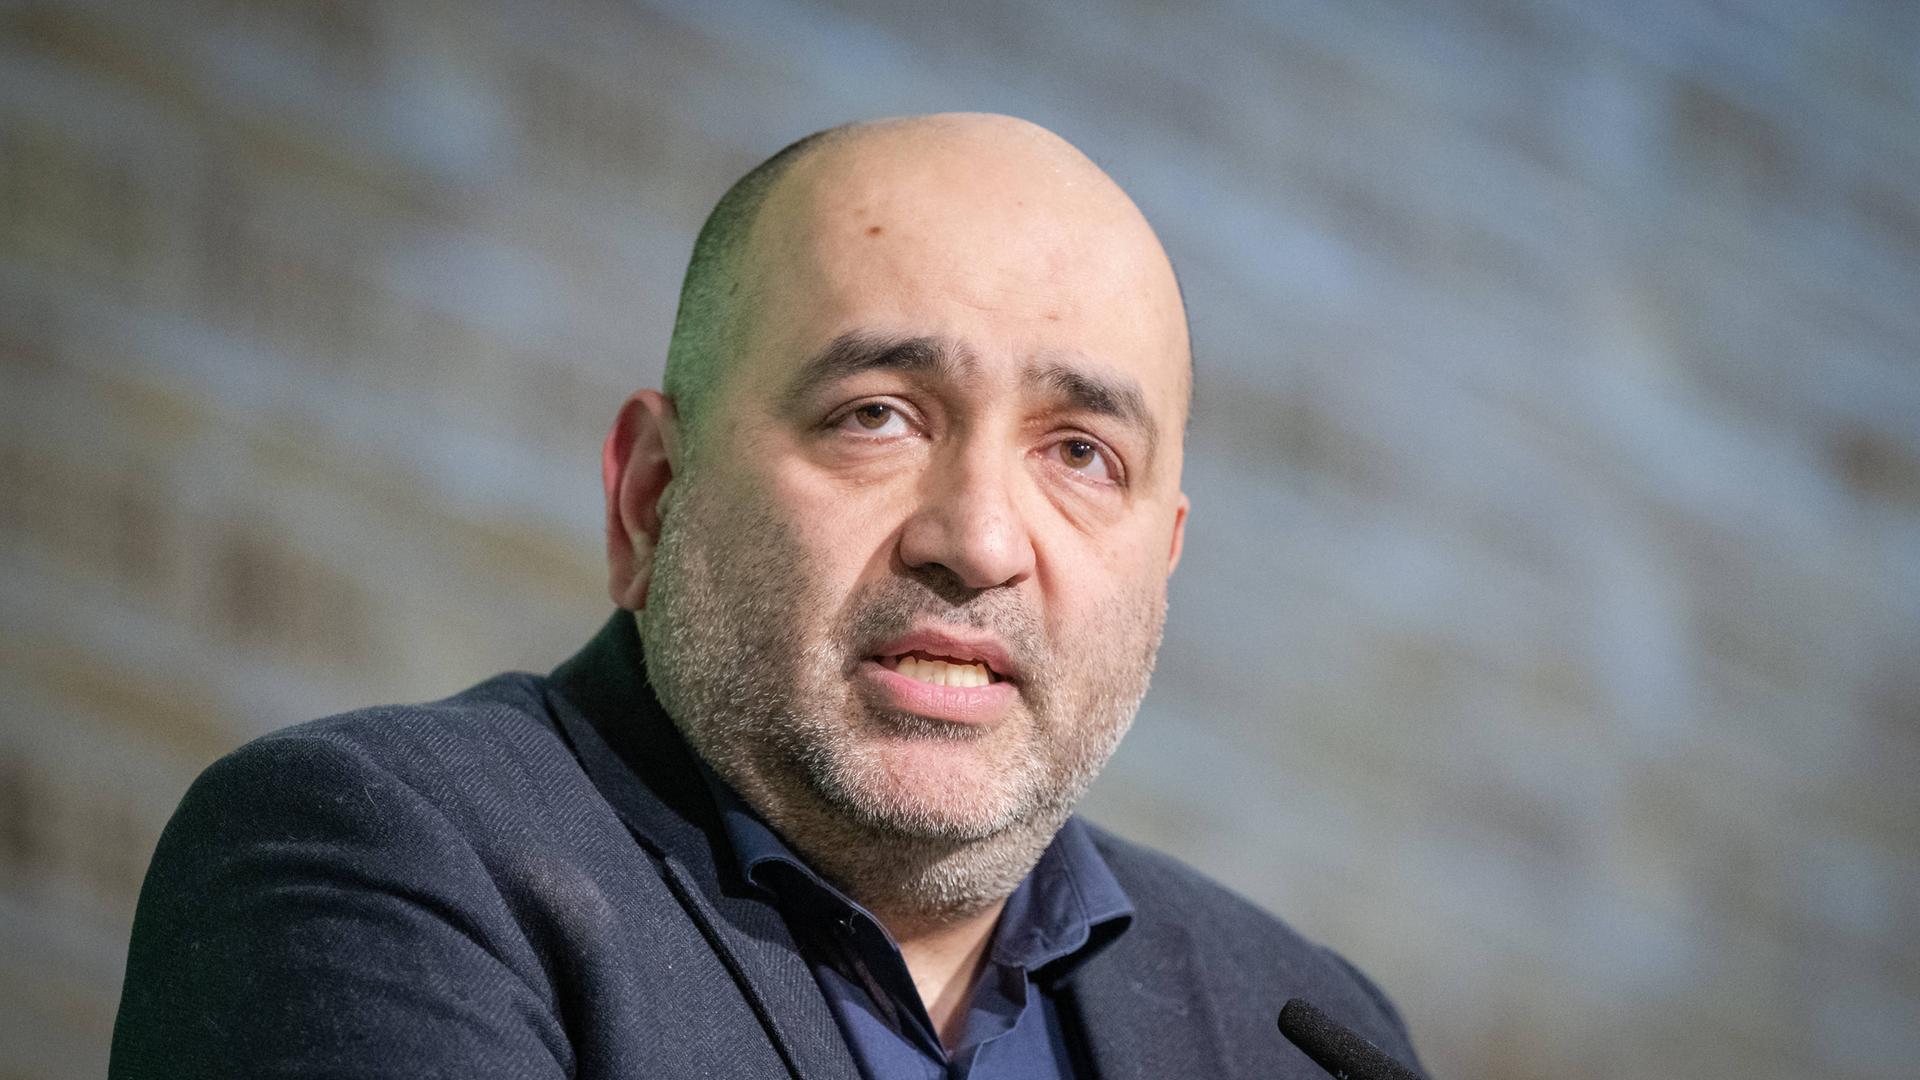 Omid Nouripour - Bundesparteivorsitzender von Bündnis 90/ Die Grünen